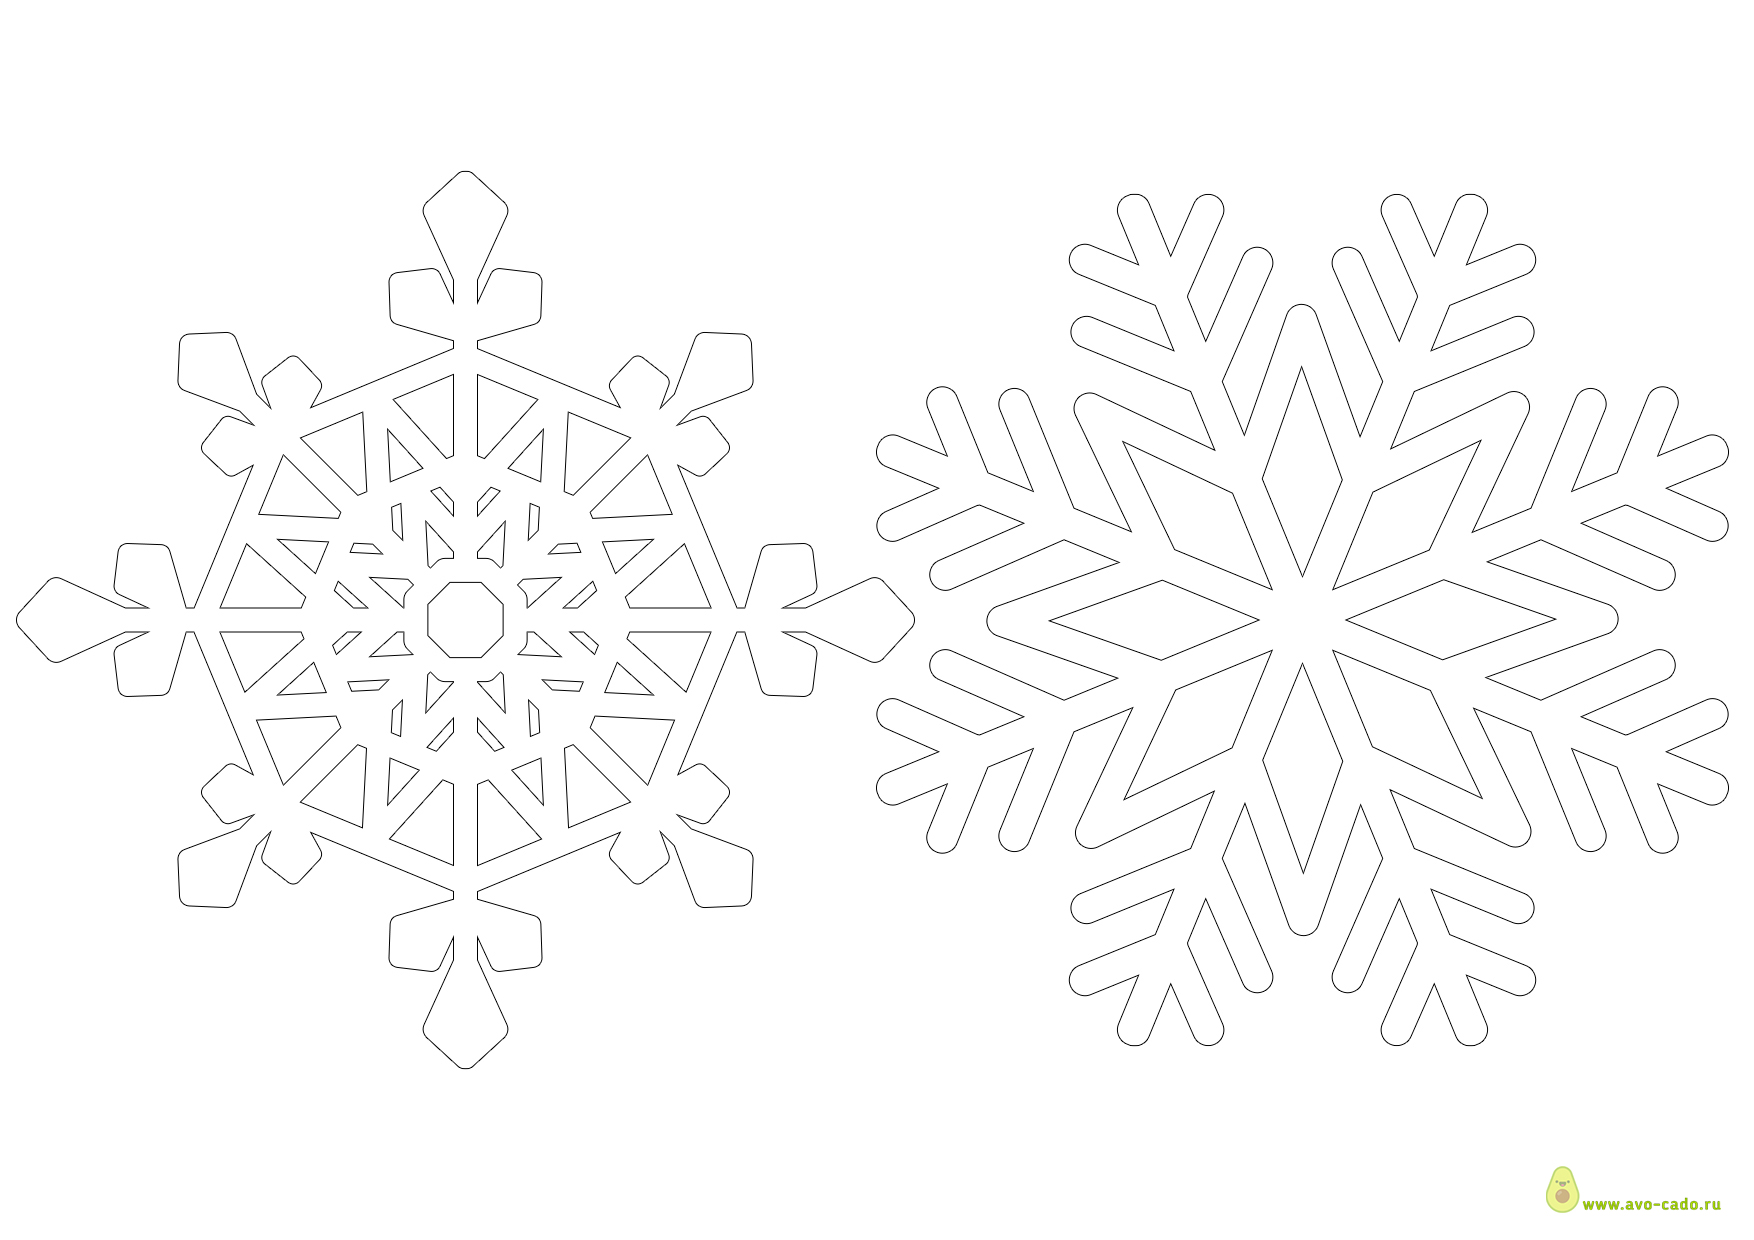 Объемные снежинки из бумаги на новый год 2021-2022: простые и красивые! шаблоны и схемы для вырезания